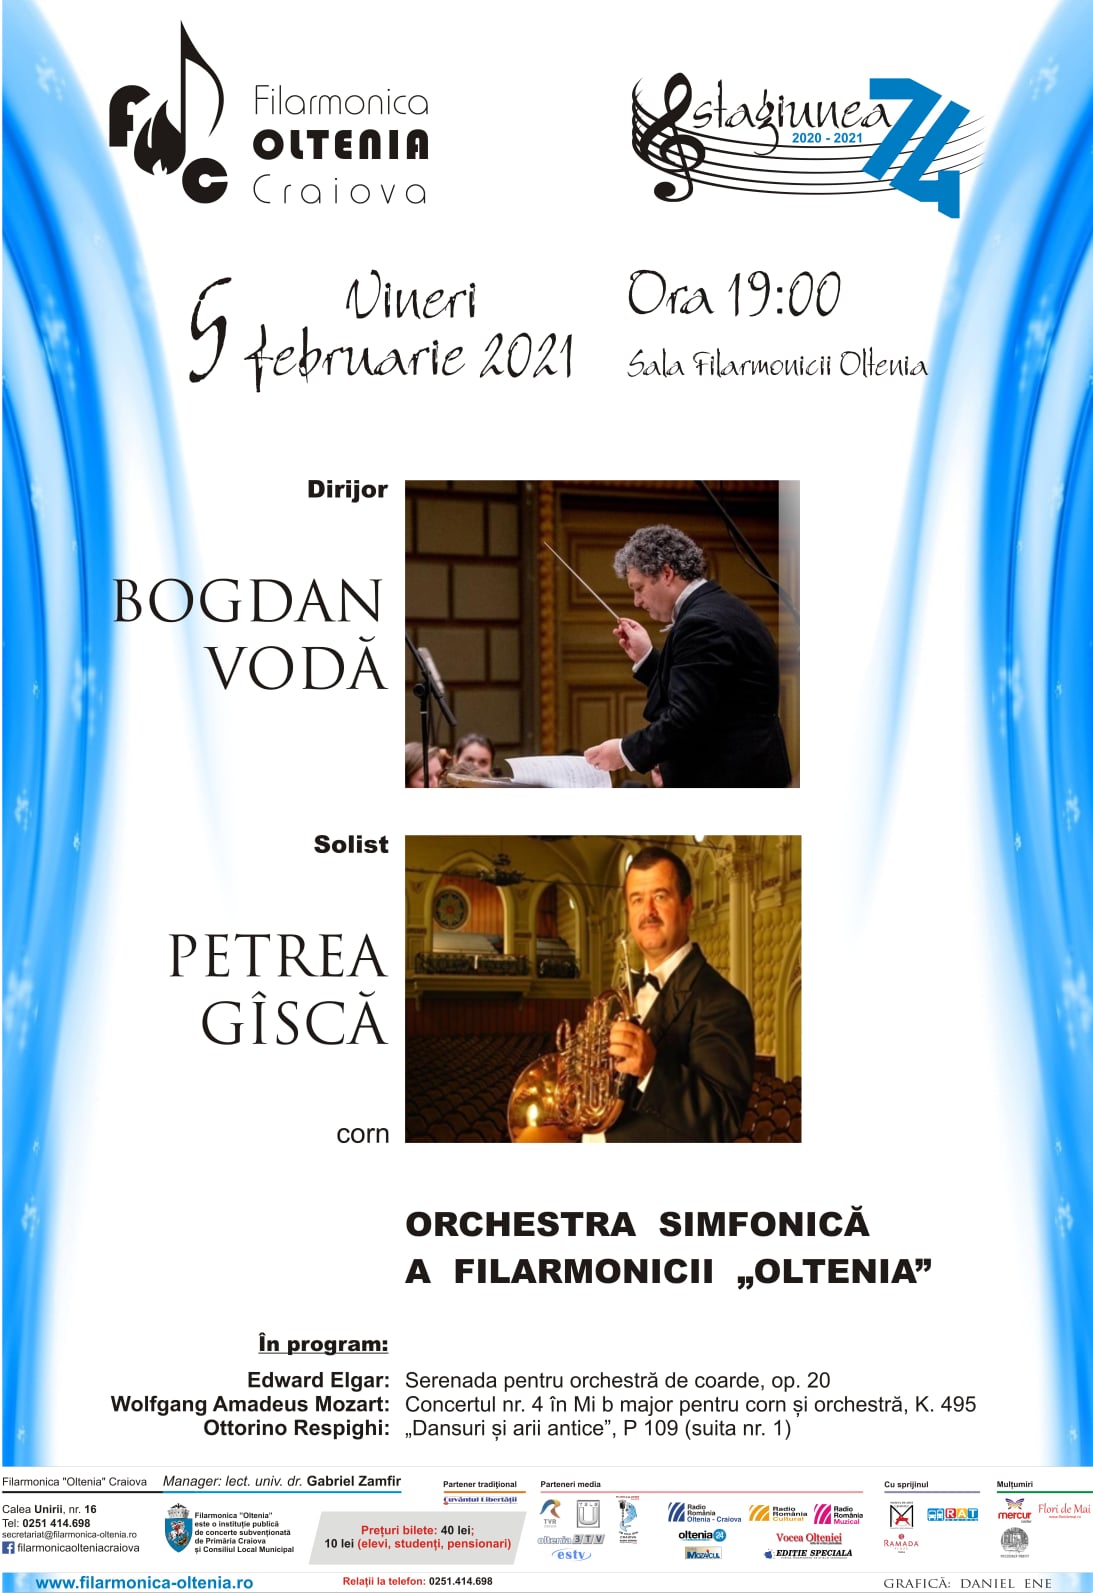 Concert Elgar/Mozart/Respighi